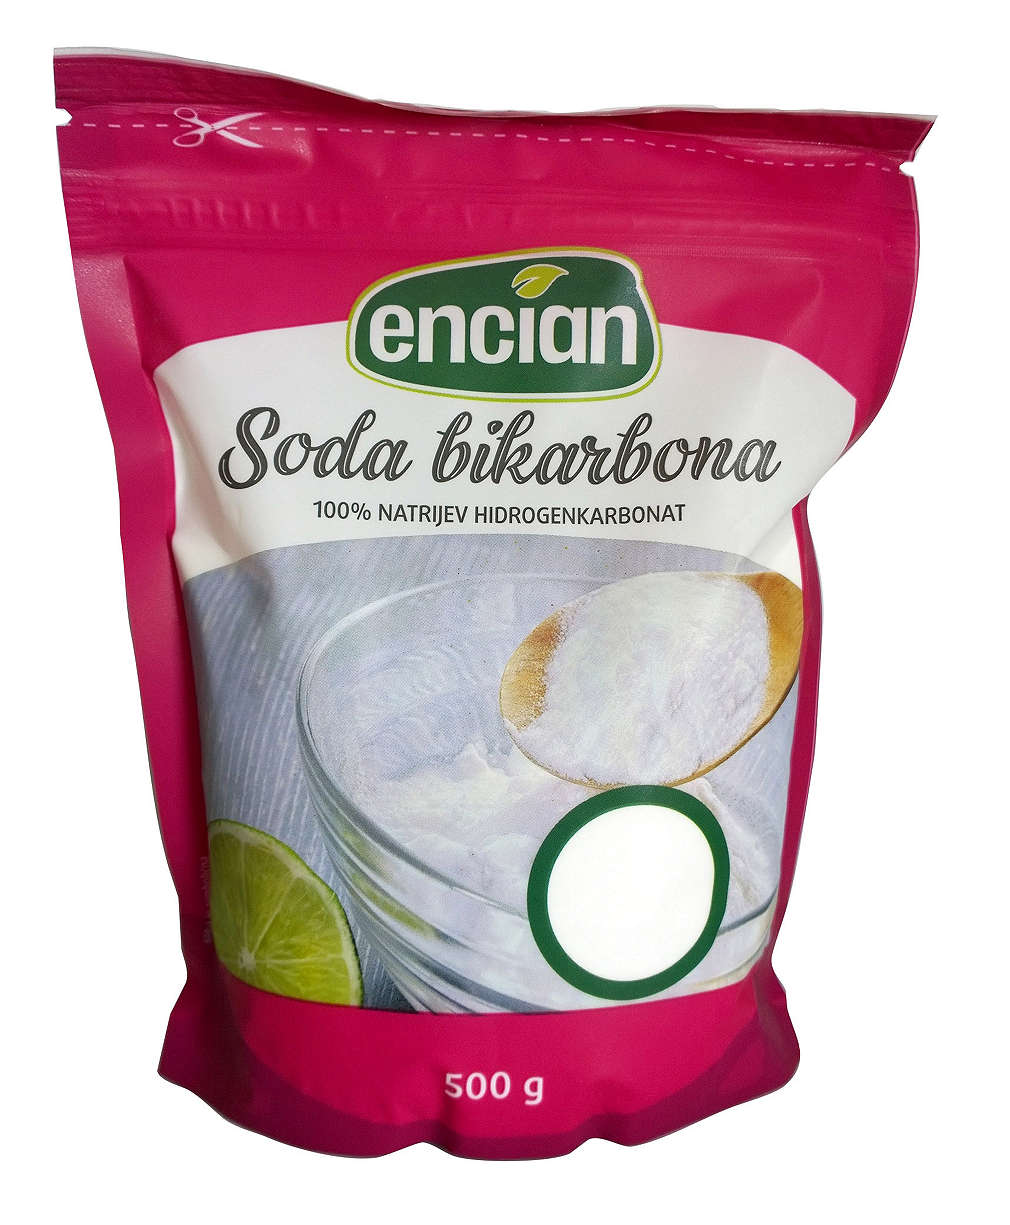 Fotografija ponude Encian Soda bikarbona